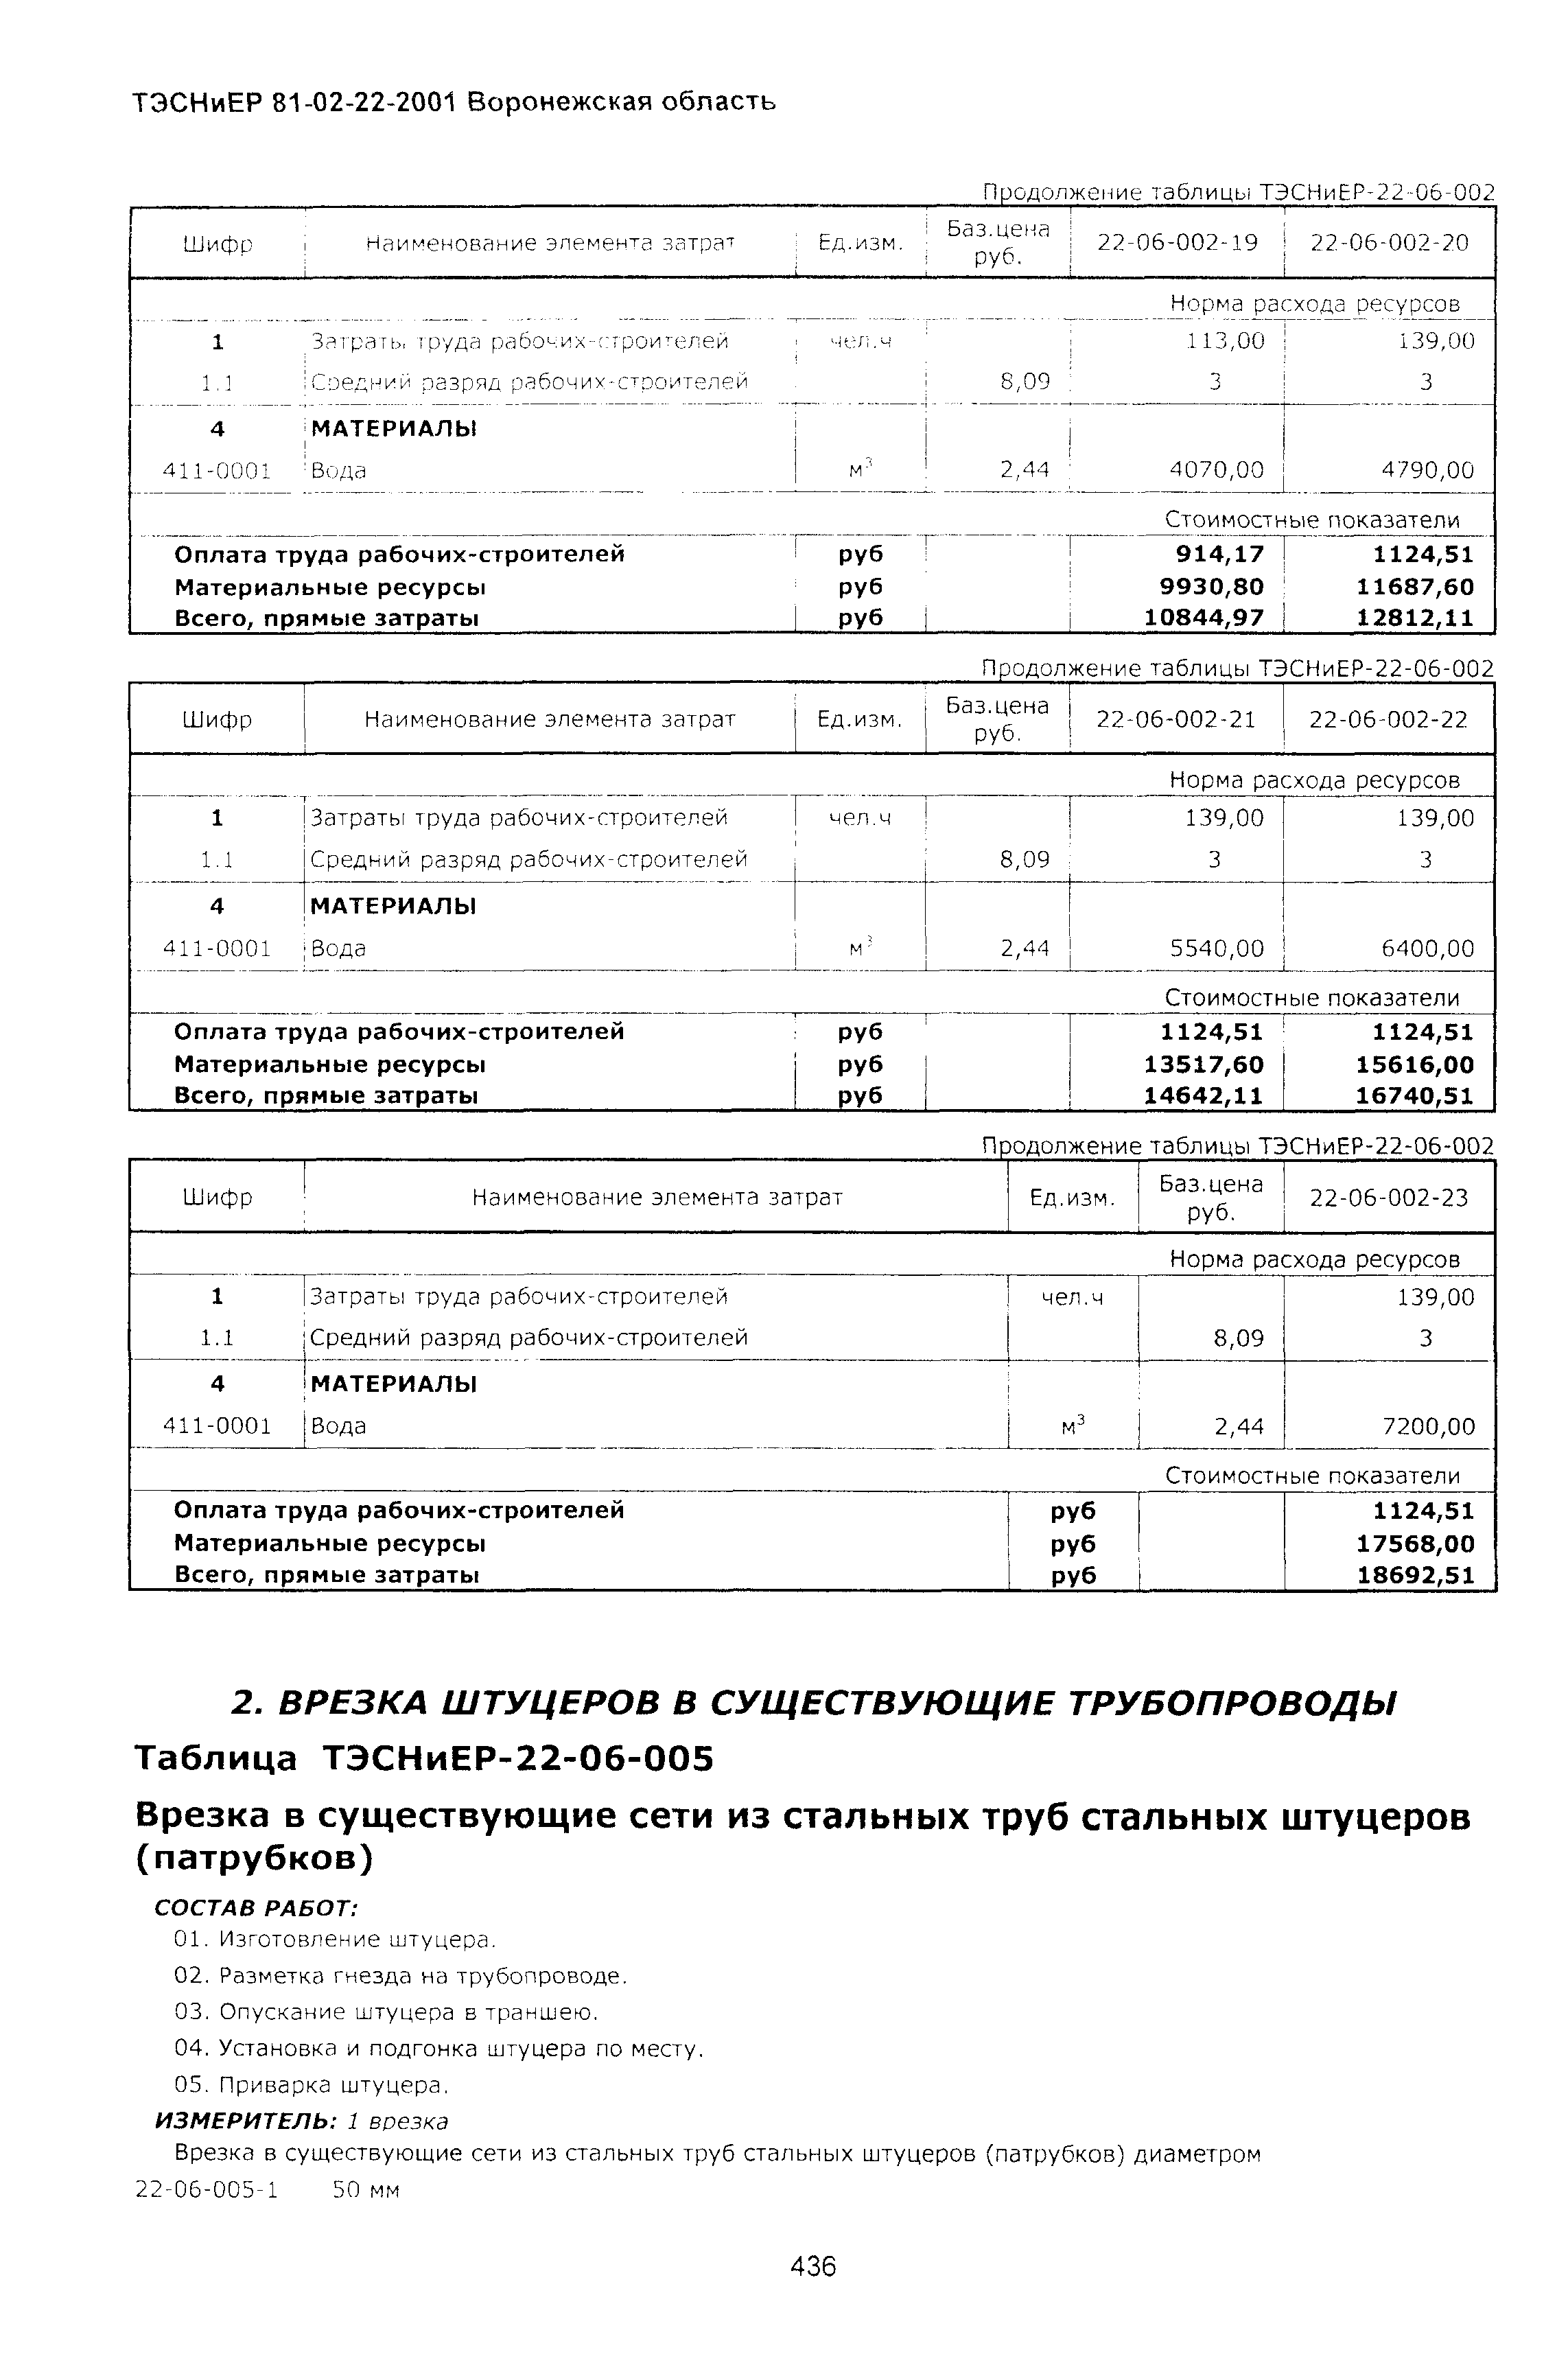 ТЭСНиЕР Воронежская область 81-02-22-2001